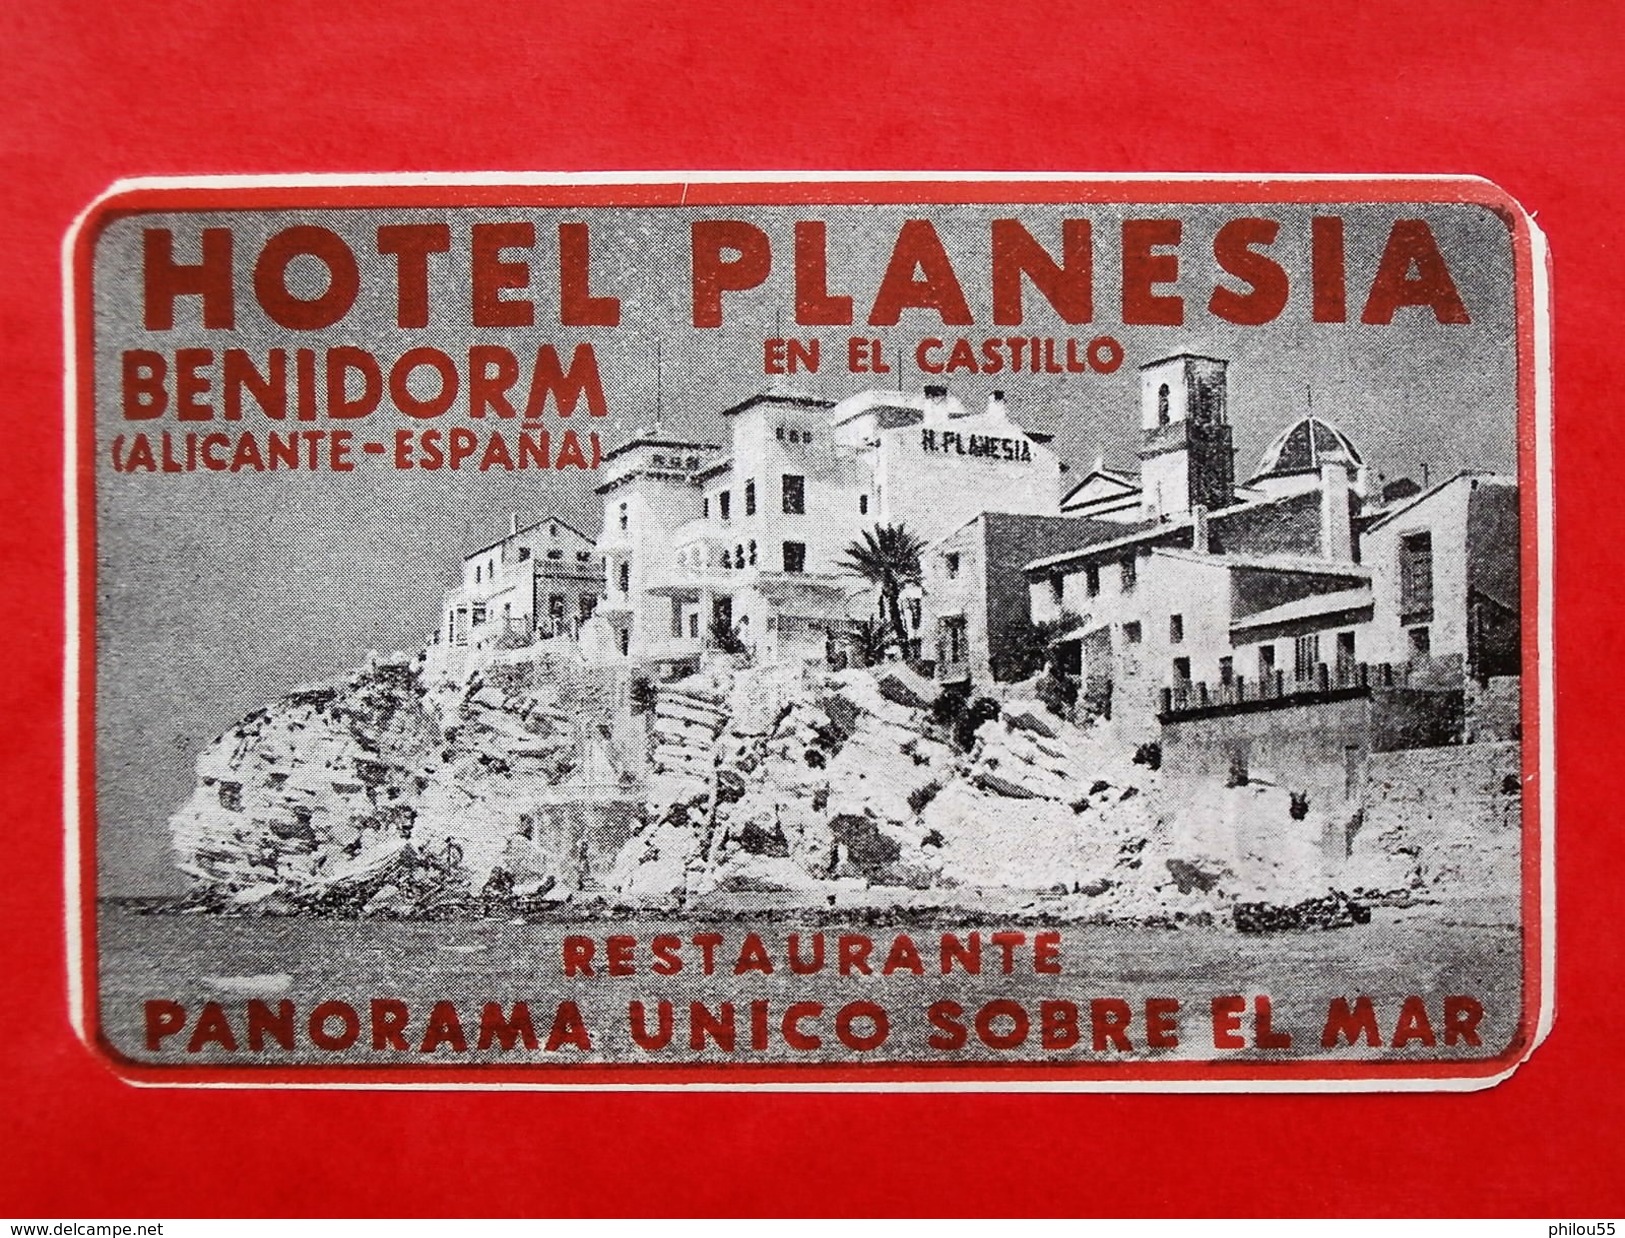 Espagne BENIDORM HOTEL PLANESIA EN EL CASTILLO Panorama Unico Sobre El Mar - Hotel Labels